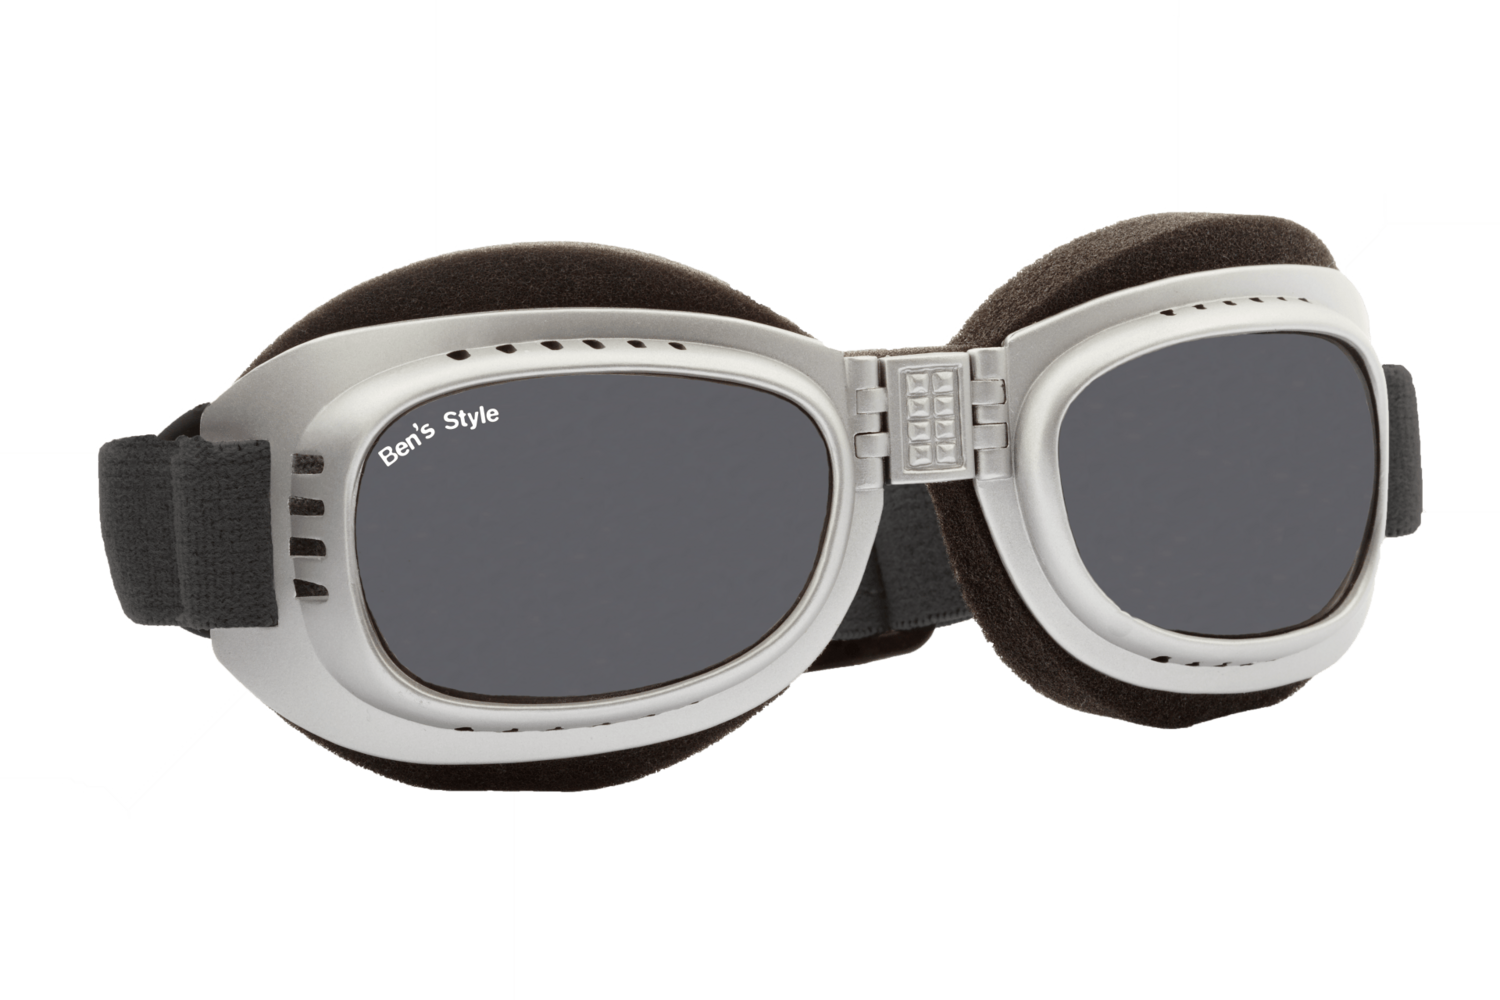 Hot I M -
Hundeschutzbrille Größe M
- Fassung: Chrom, Gläser: Grau
Größe/Gesamtgewicht: Länge: 16,5 cm, Breite: 4,7 cm / 44 g